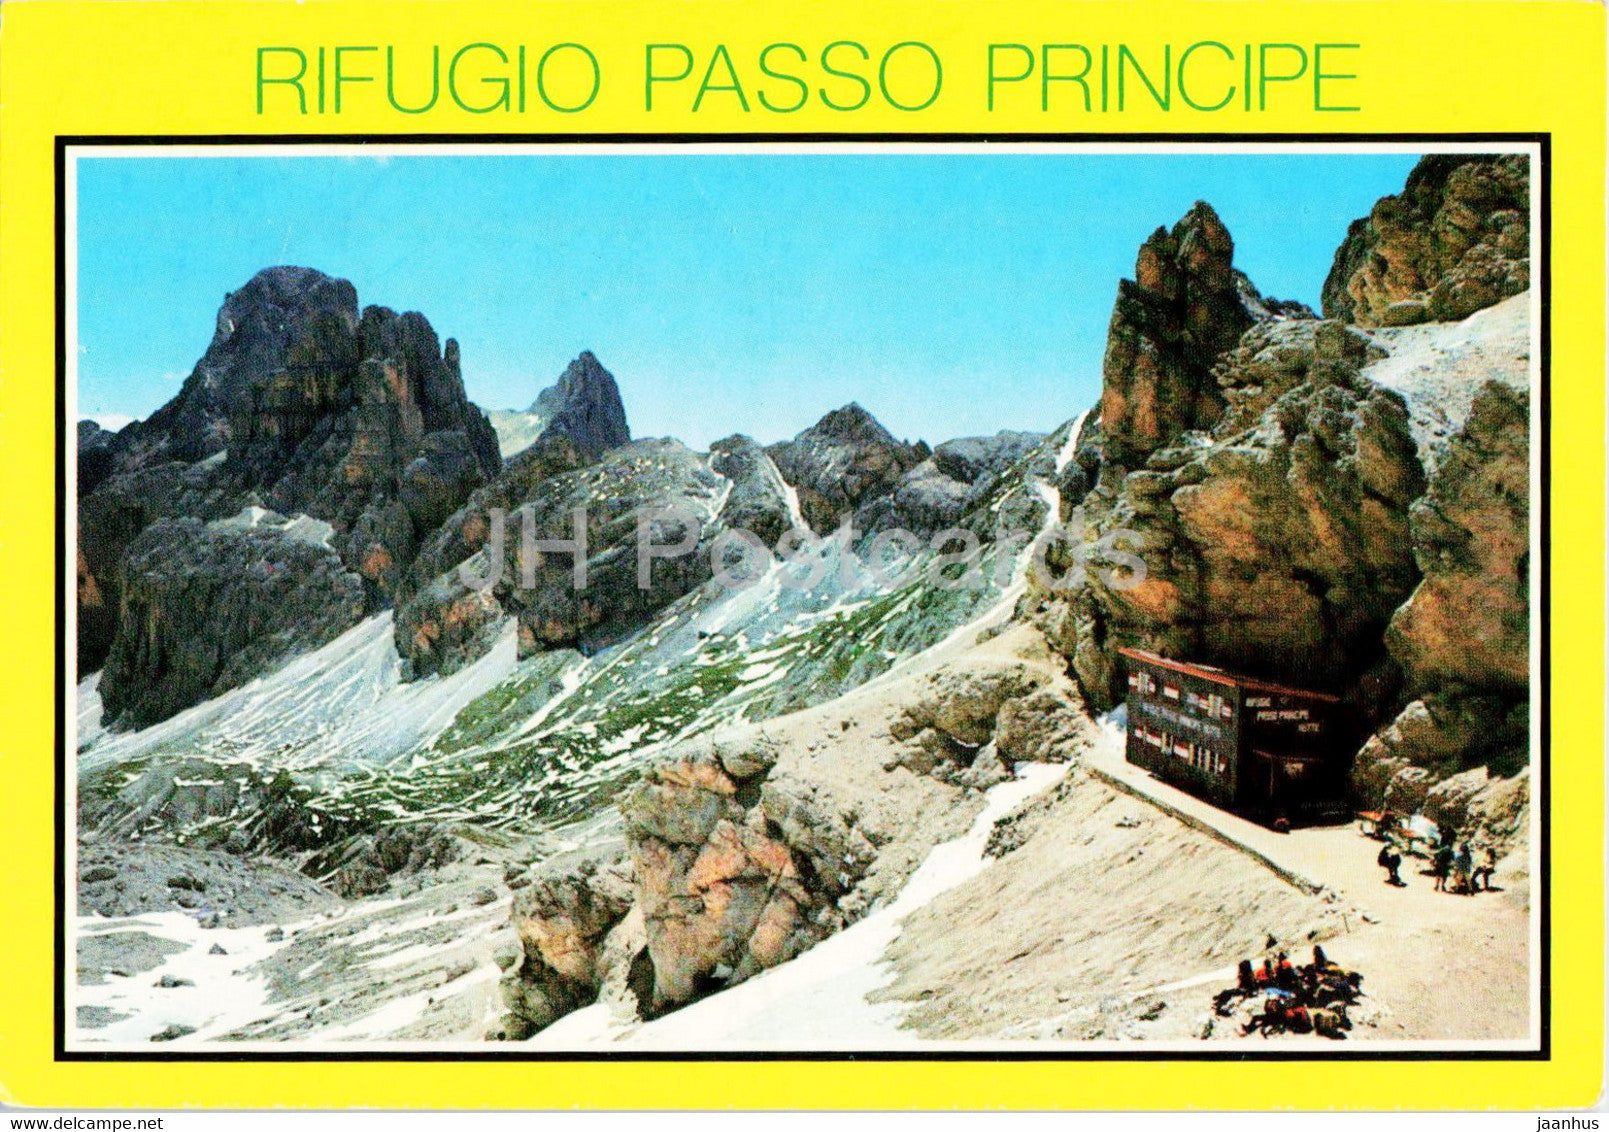 Rifugio Passo Principe - Italy - used - JH Postcards